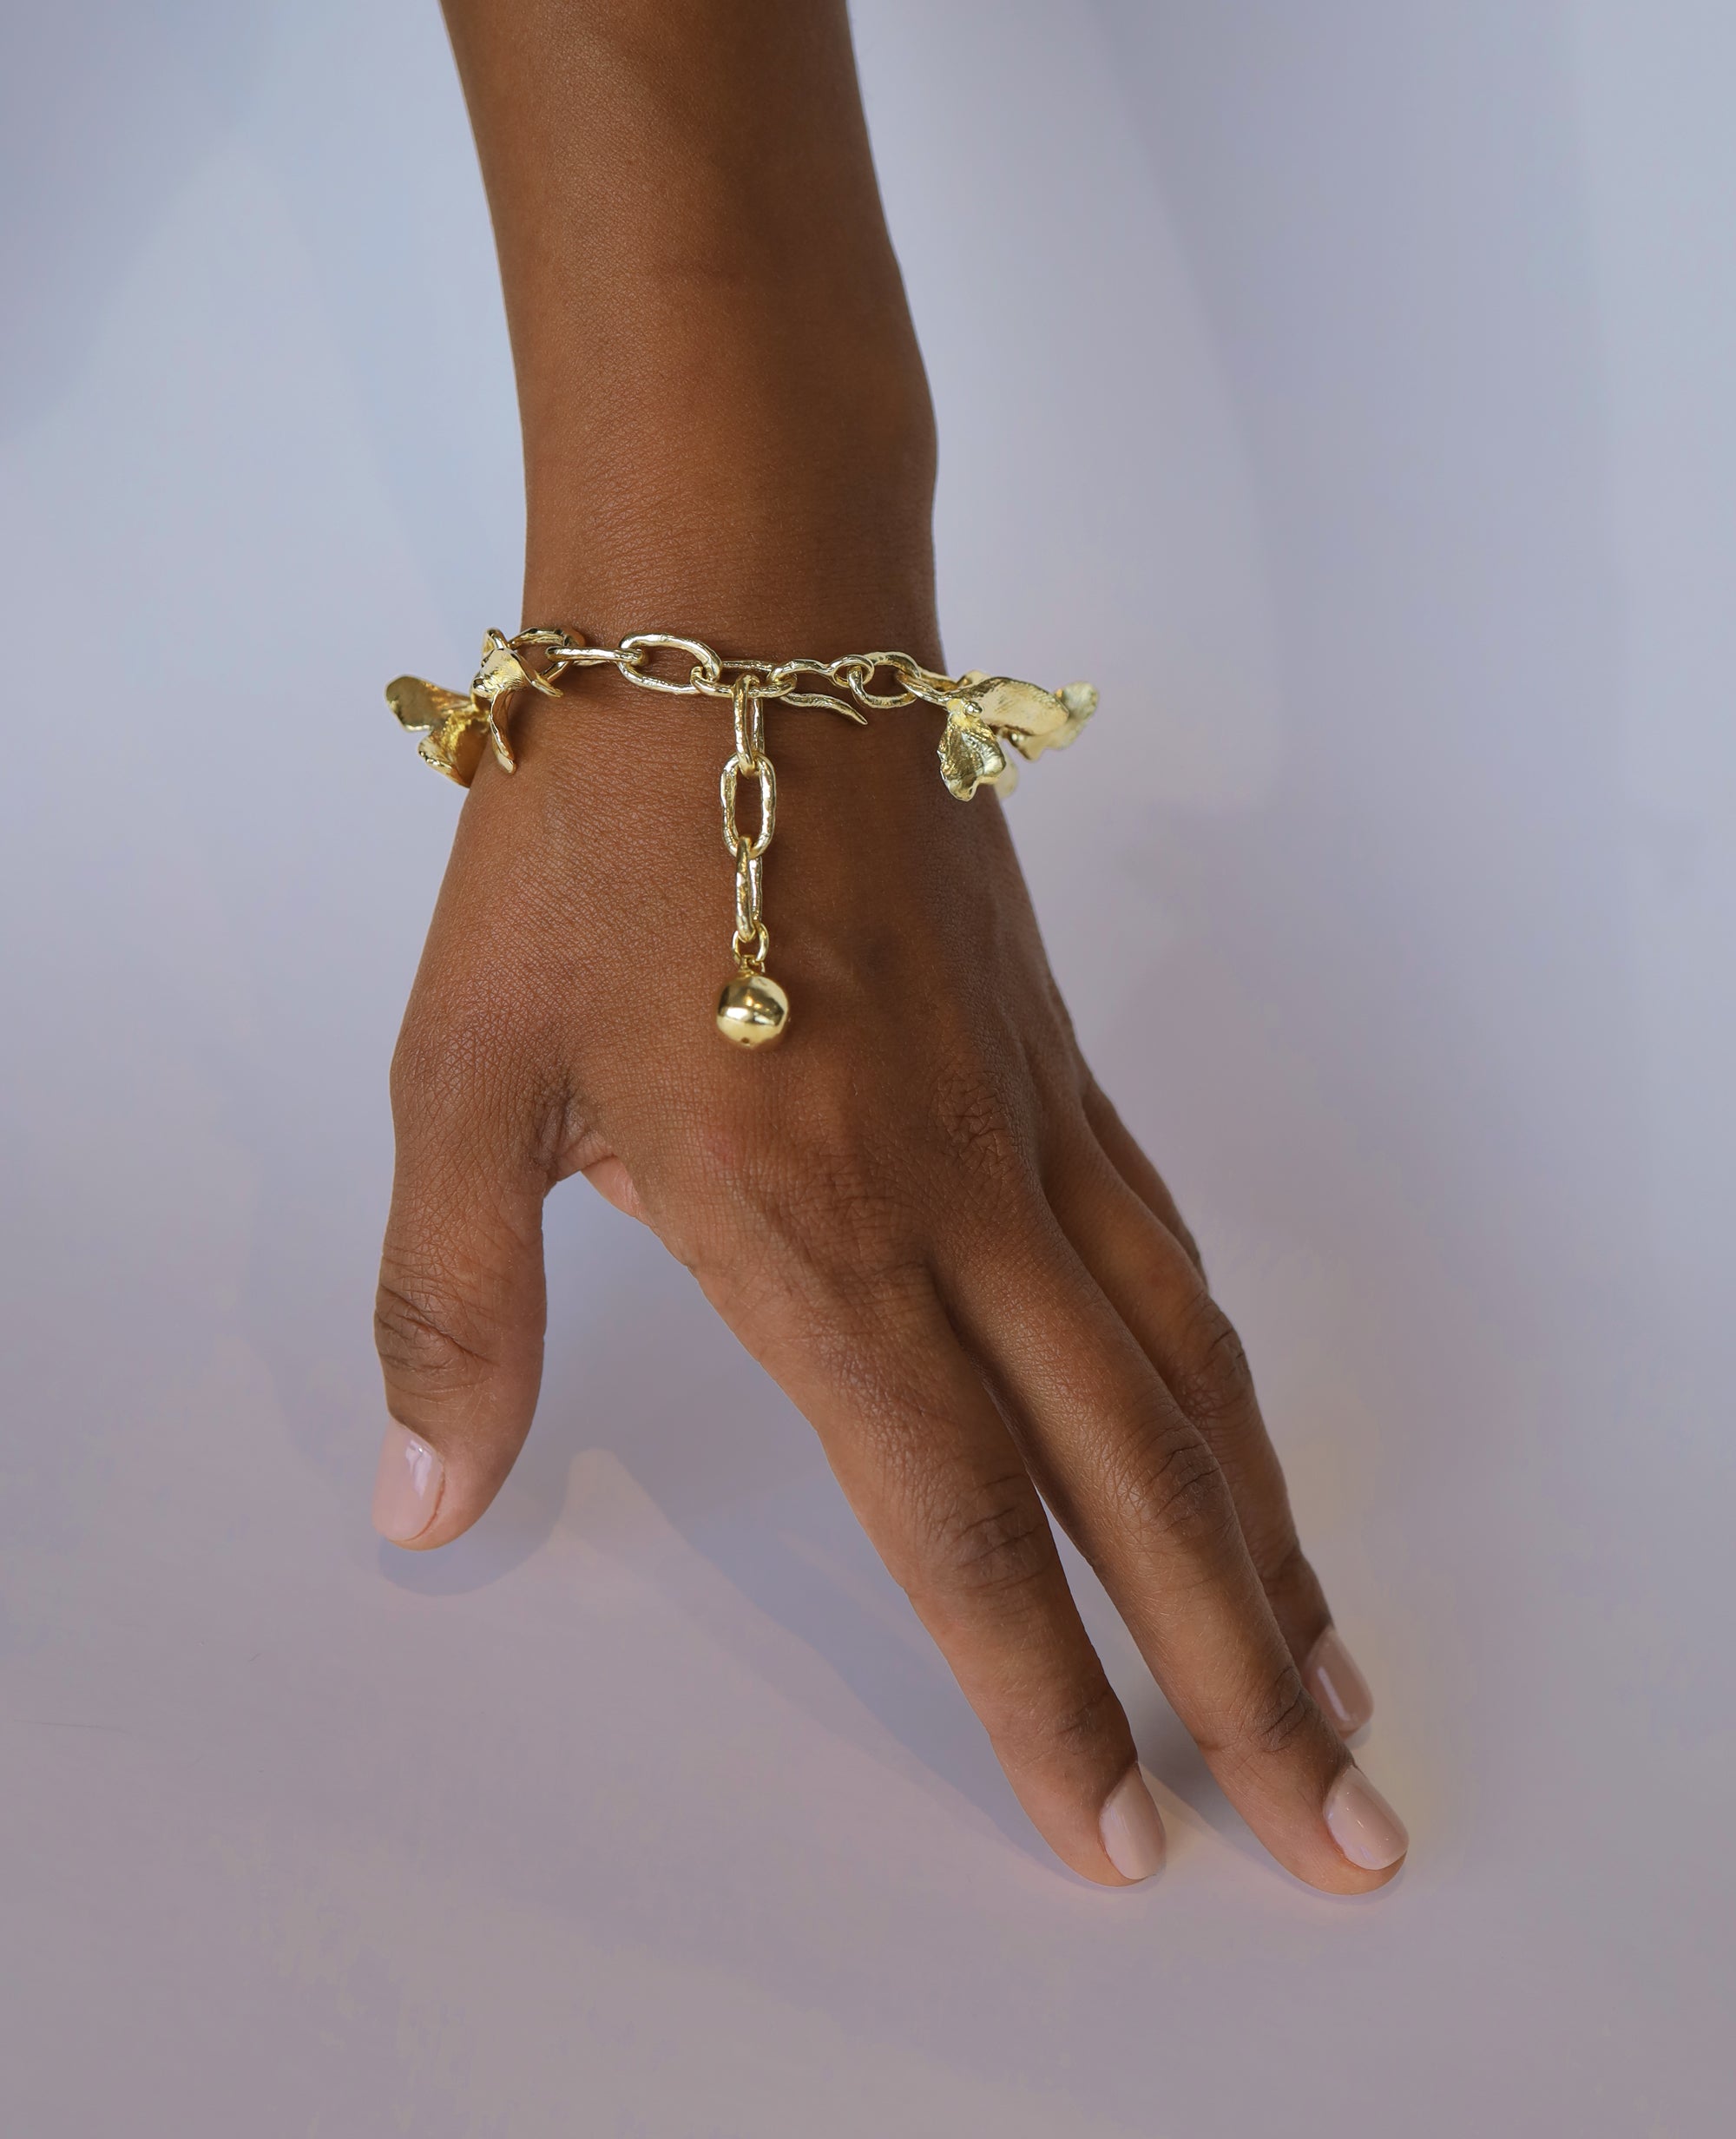 ARMLET FLORALIS // bracelet doré - bijoux ORA-C - bijoux faits à la main par Caroline Pham, designer indépendante basée à Montréal